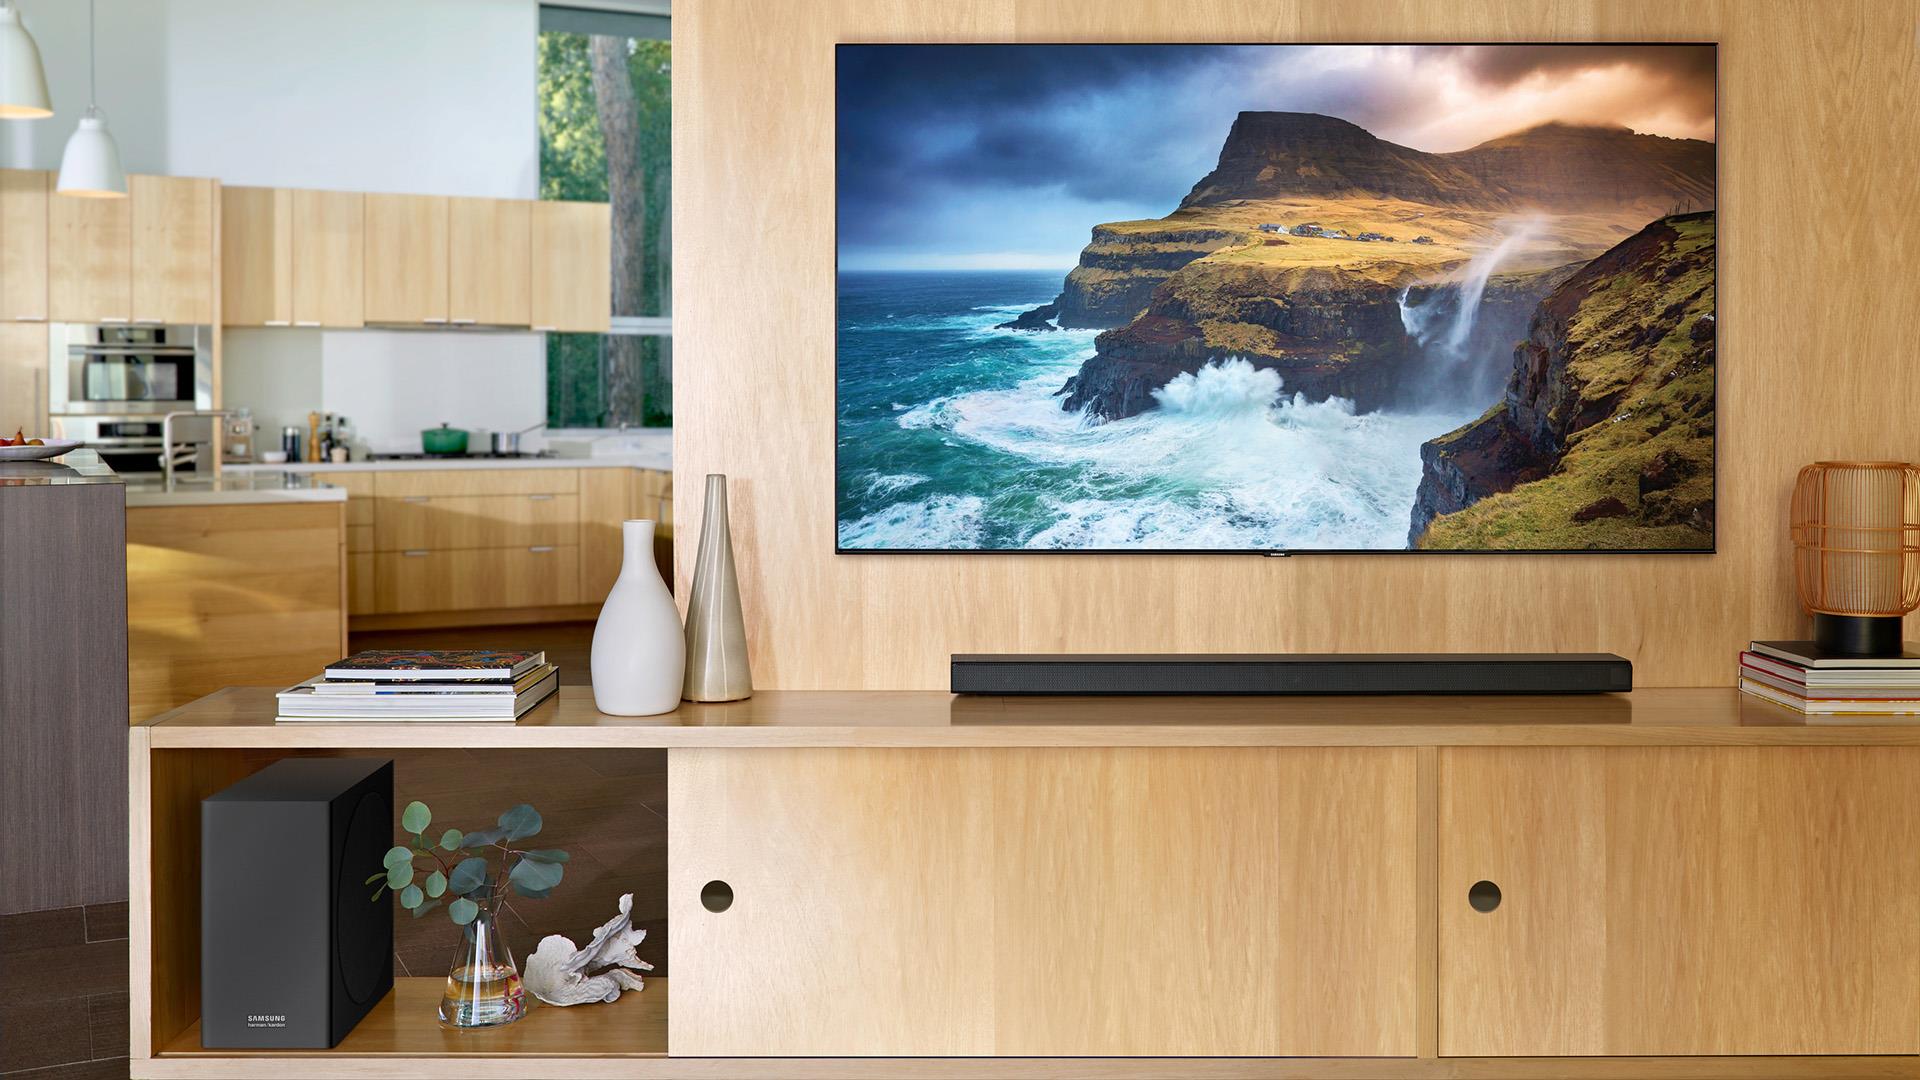 Samsung tung siêu sale 11.11: mua TV 55 inch chỉ với 11 triệu và nhiều ưu đãi khác - Ảnh 4.